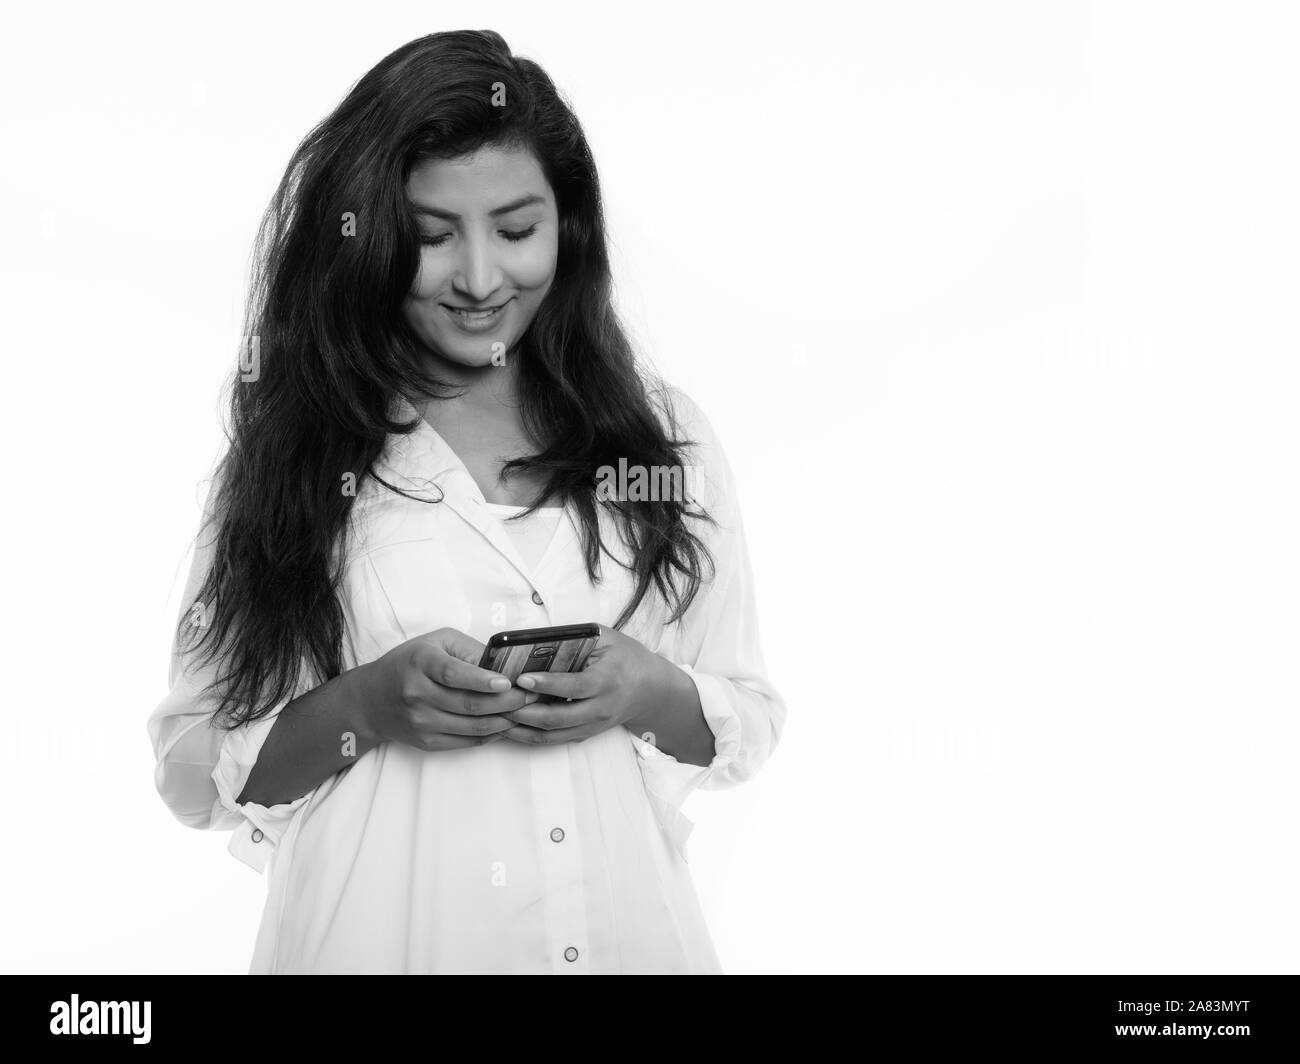 Studio shot of young woman smiling persan heureux lors de l'utilisation de téléphone mobile Banque D'Images